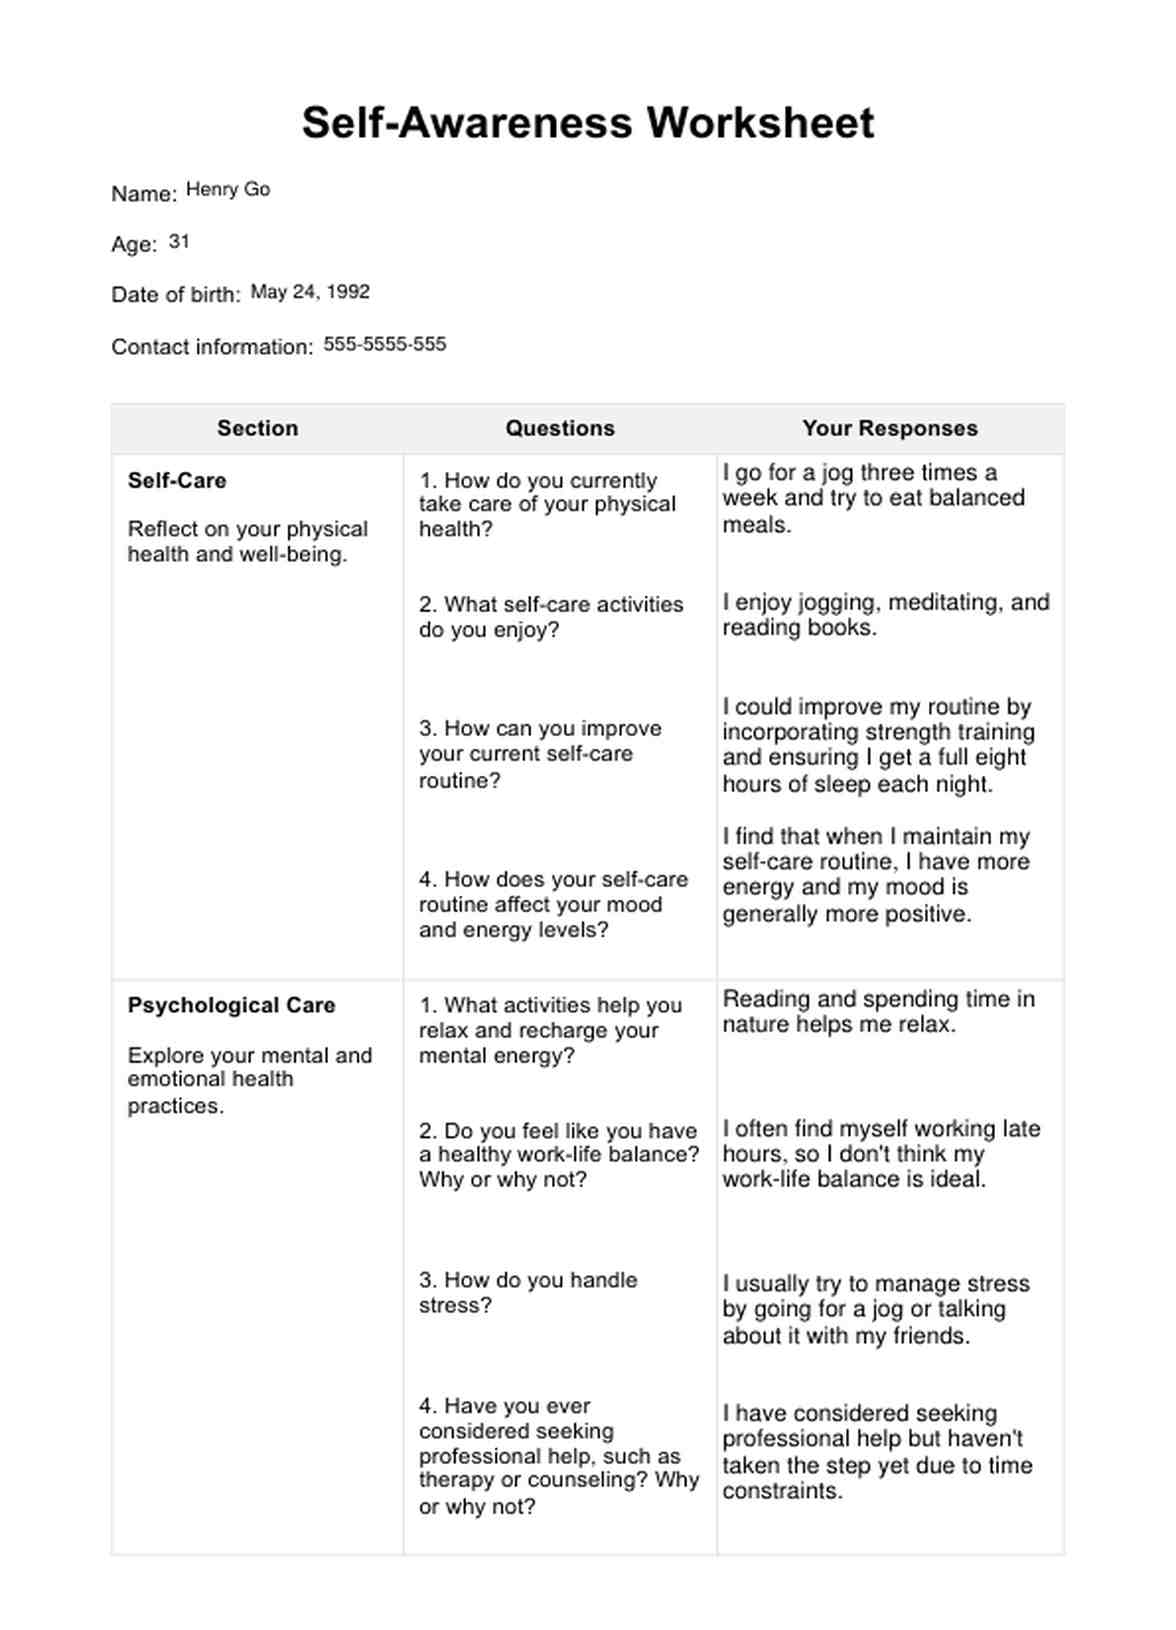 Self-Awareness Worksheet PDF Example